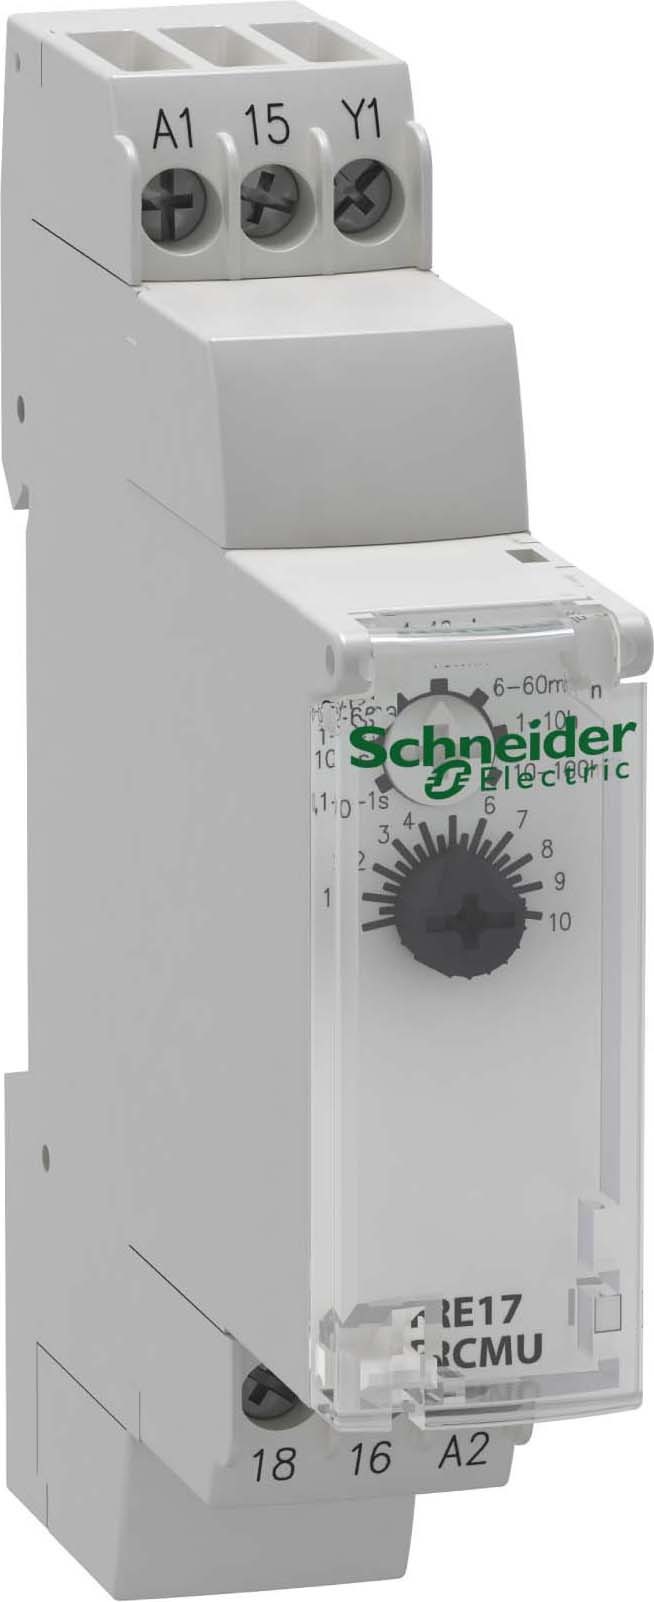 Schneider Electric RE17RCMU Zeitrelais rückfallverzögert 0,1 s-100 h Relais 1 W 24 VDC/24-240VAC